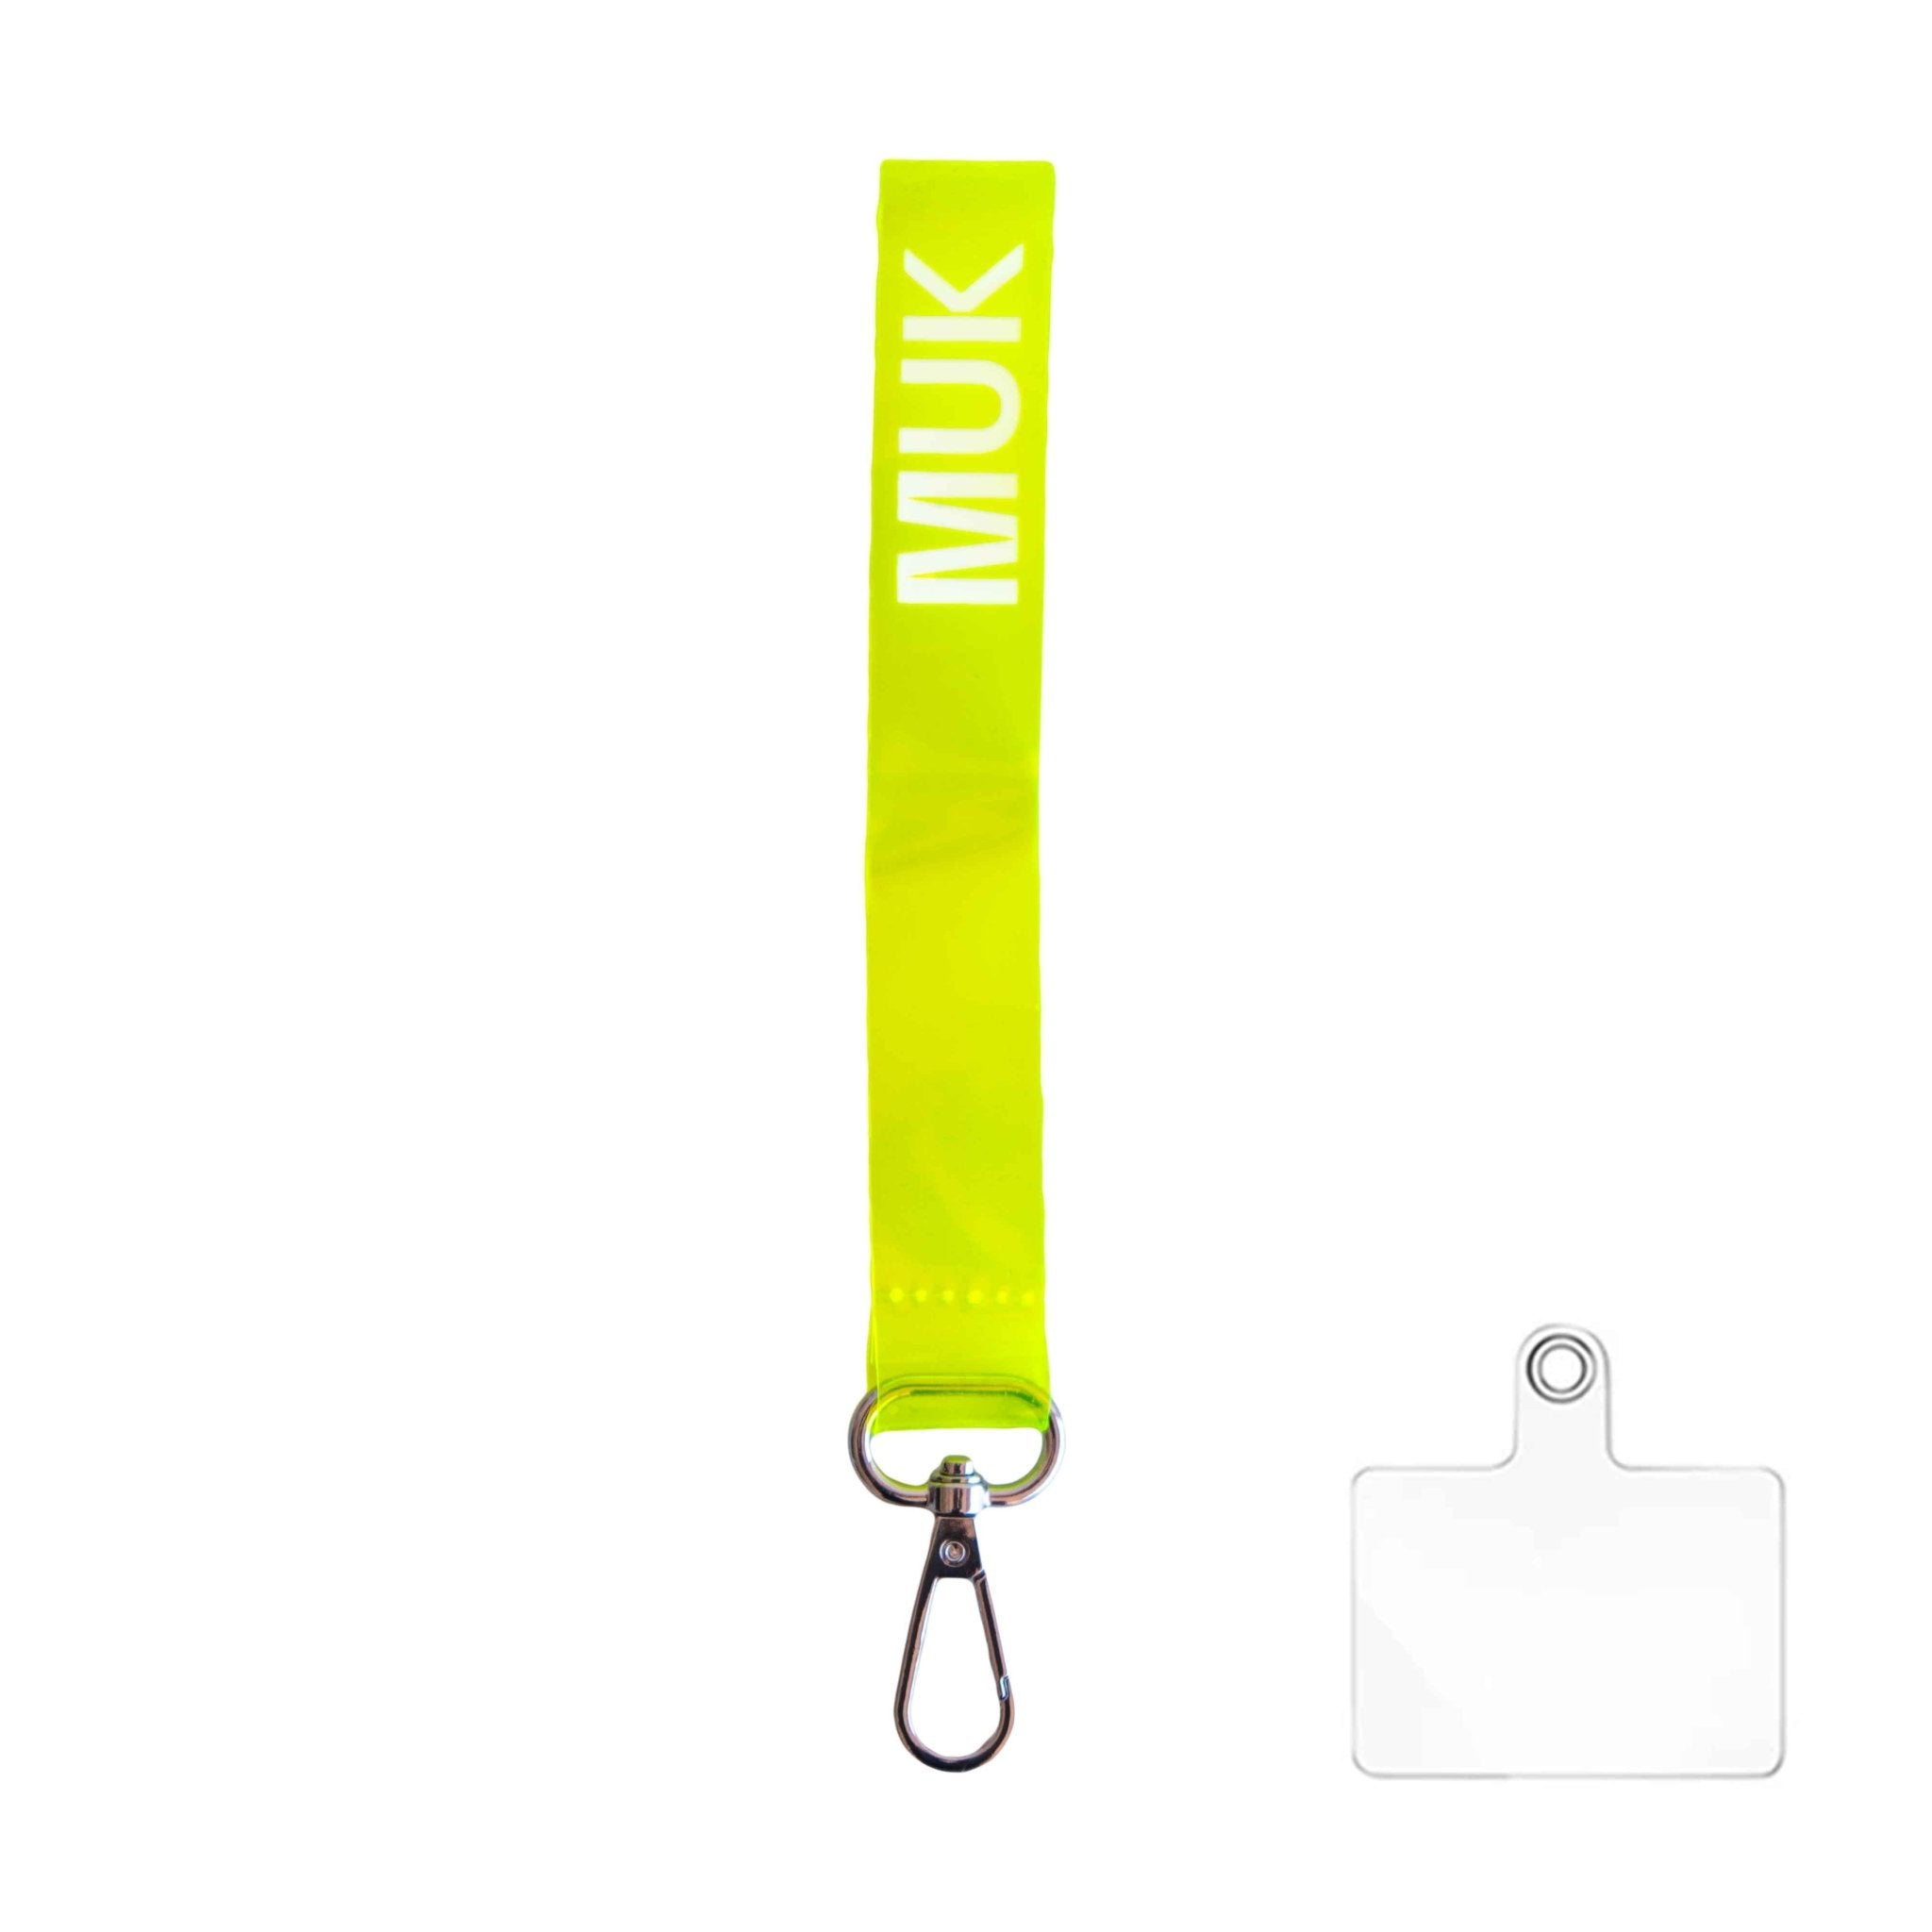 Cuerda semitransparente de color amarillo flúor con la opción de personalización y el logo de Muk. Dispone de un mosquetón para poder usar como phonestrap con el adaptador de cuerda universal (incluido), o bien, como llavero.
